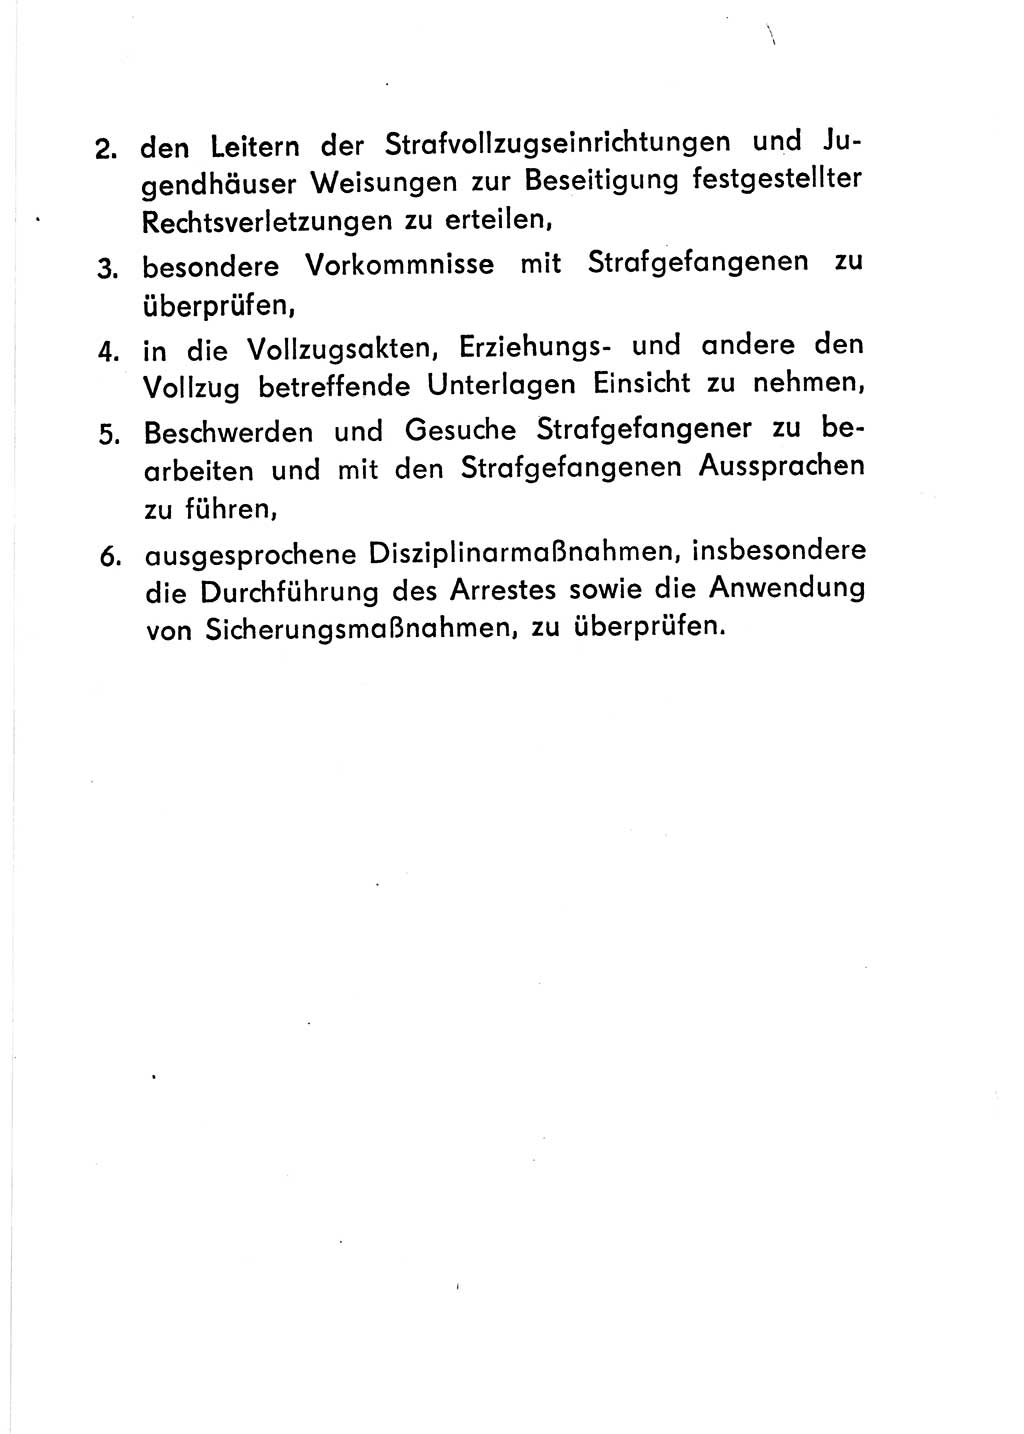 Gesetz über den Vollzug der Strafen mit Freiheitsentzug (Strafvollzugsgesetz) - StVG - [Deutsche Demokratische Republik (DDR)] 1977, Seite 91 (StVG DDR 1977, S. 91)